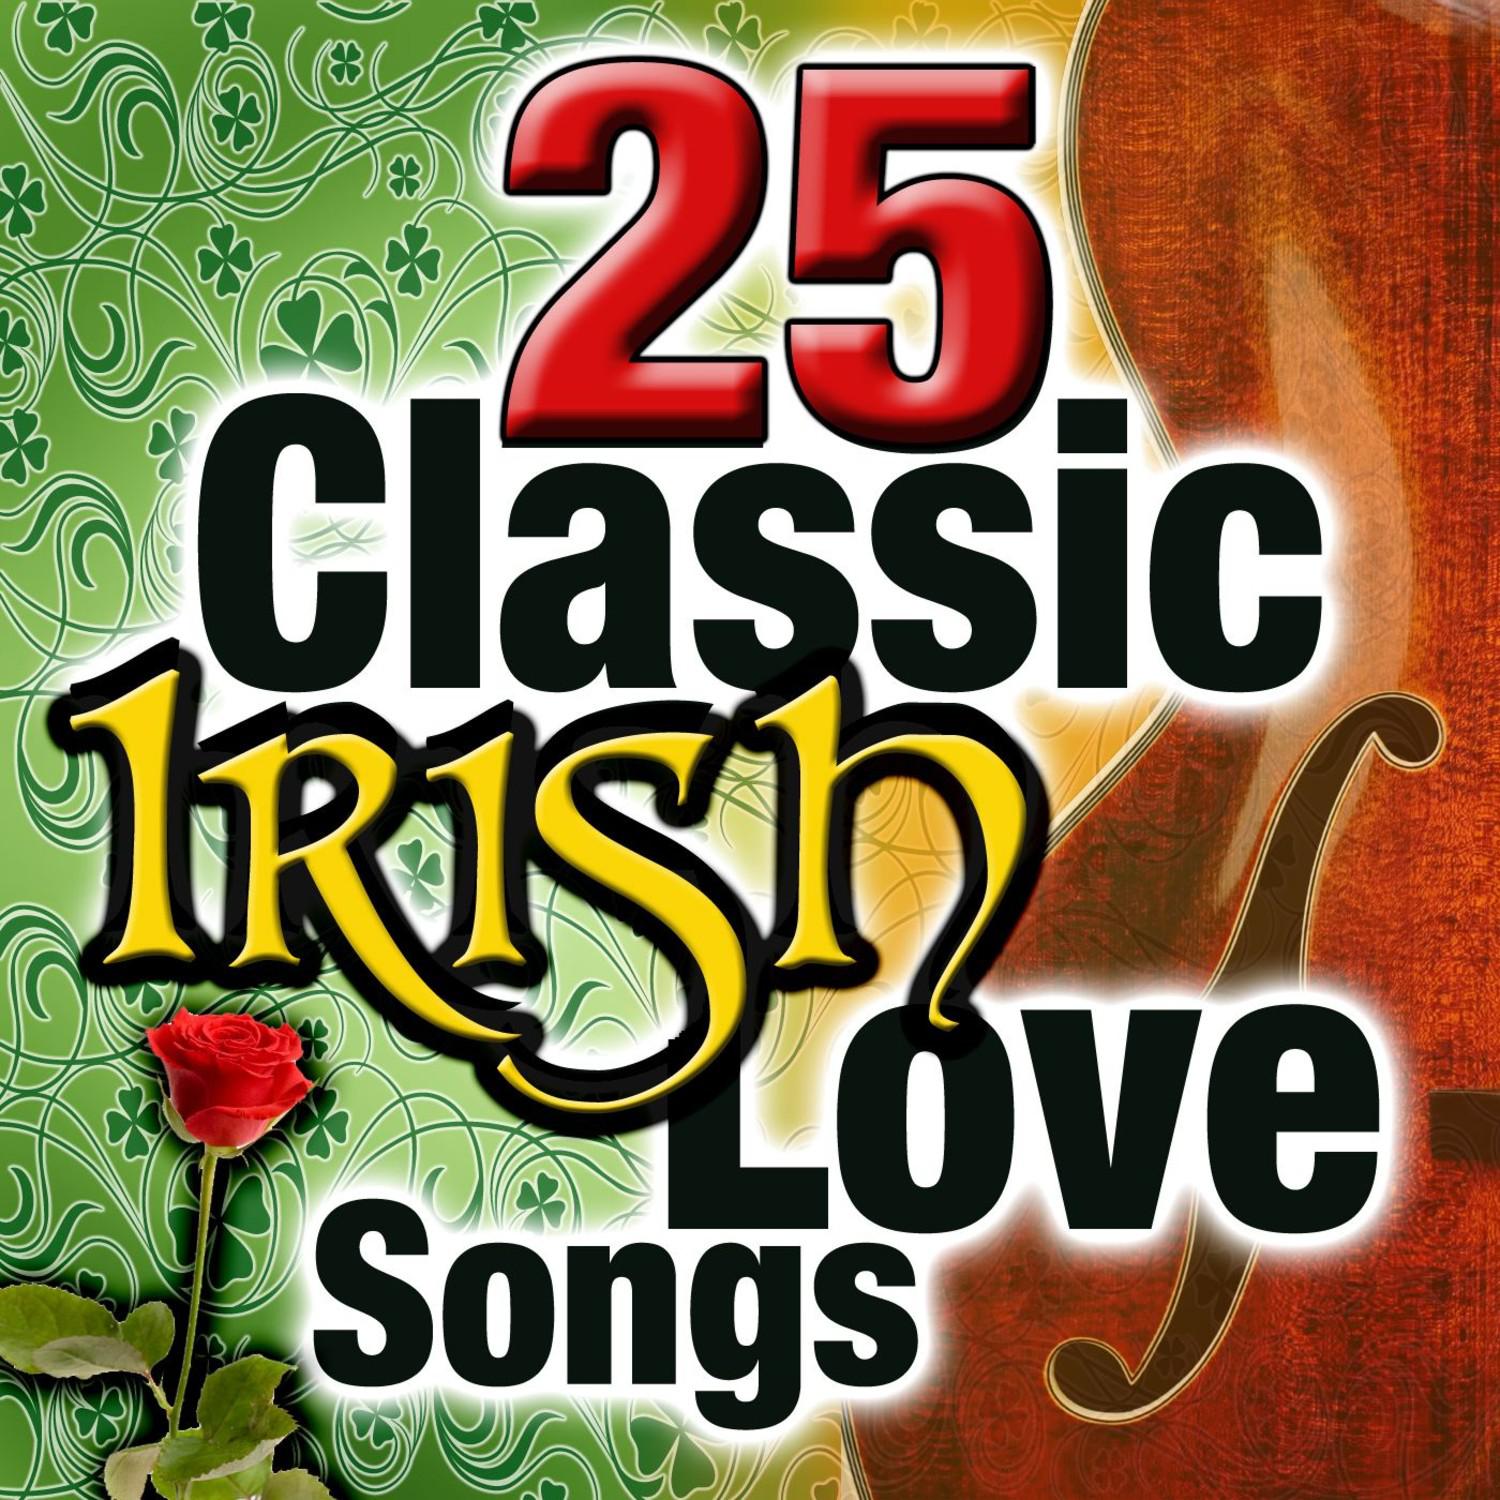 25 Classic Irish Love Songs